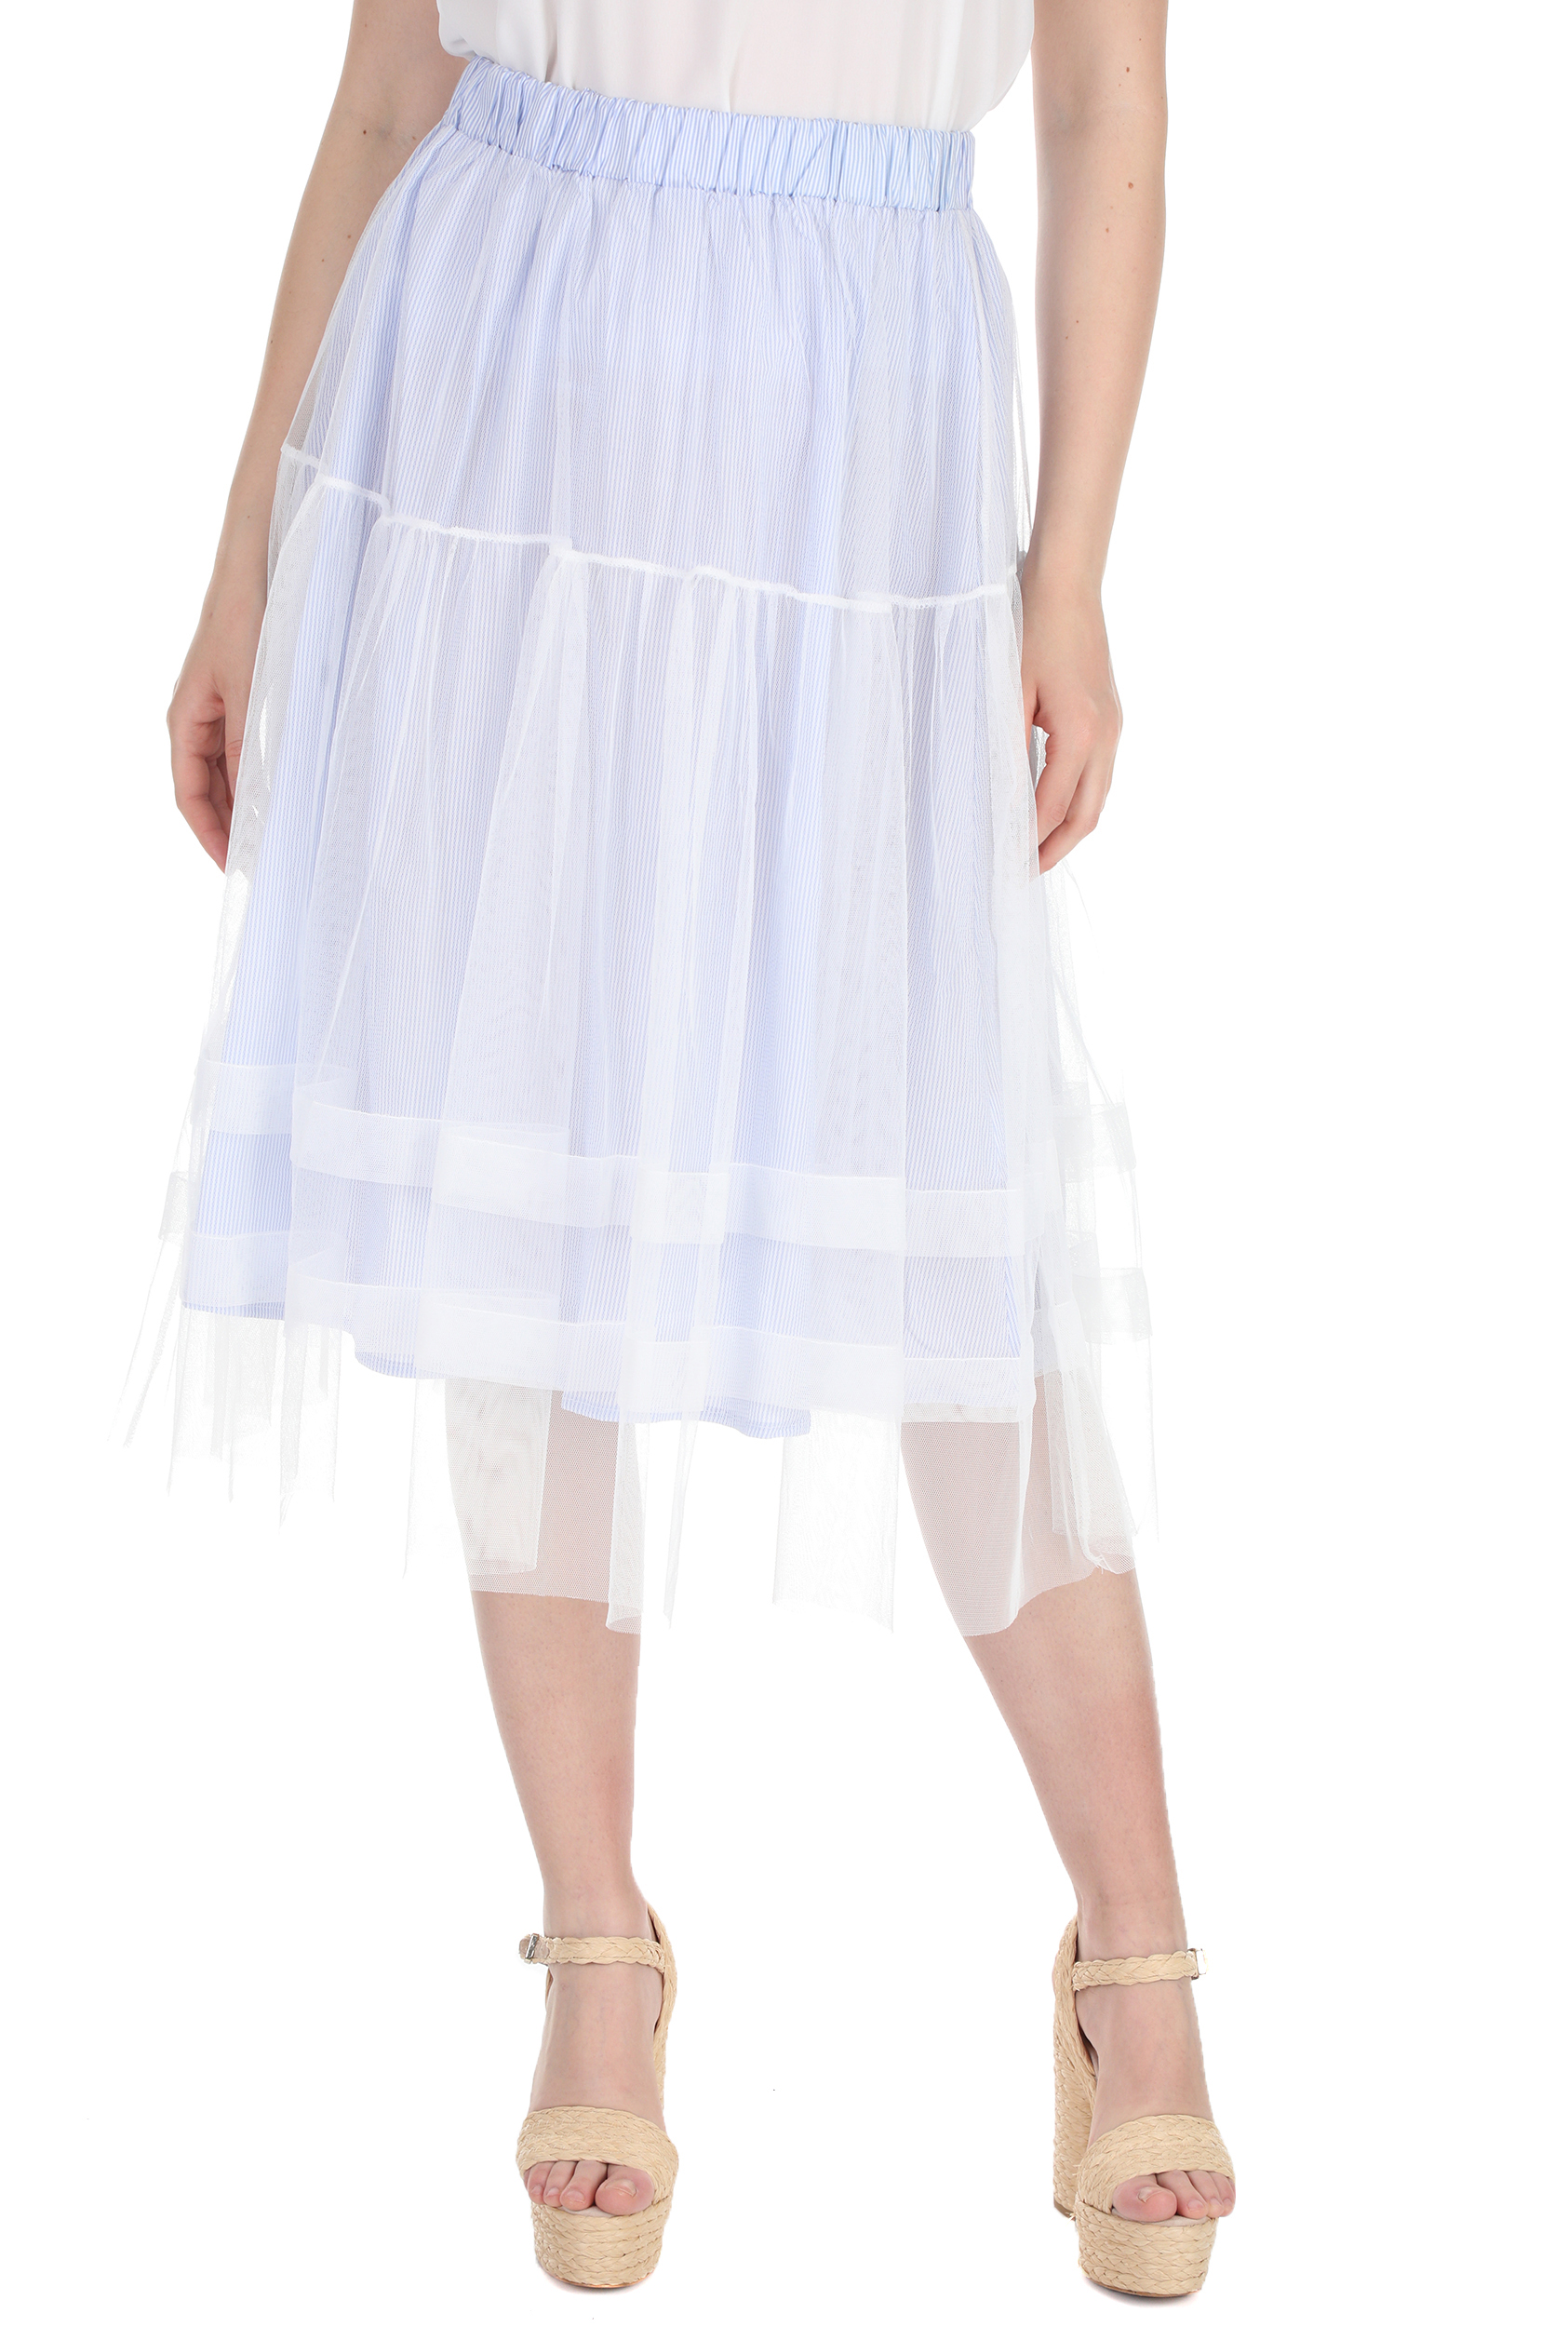 Γυναικεία/Ρούχα/Φούστες/Μέχρι το γόνατο MOLLY BRACKEN - Γυναικεία midi φούστα MOLLY BRACKEN μπλε λευκή